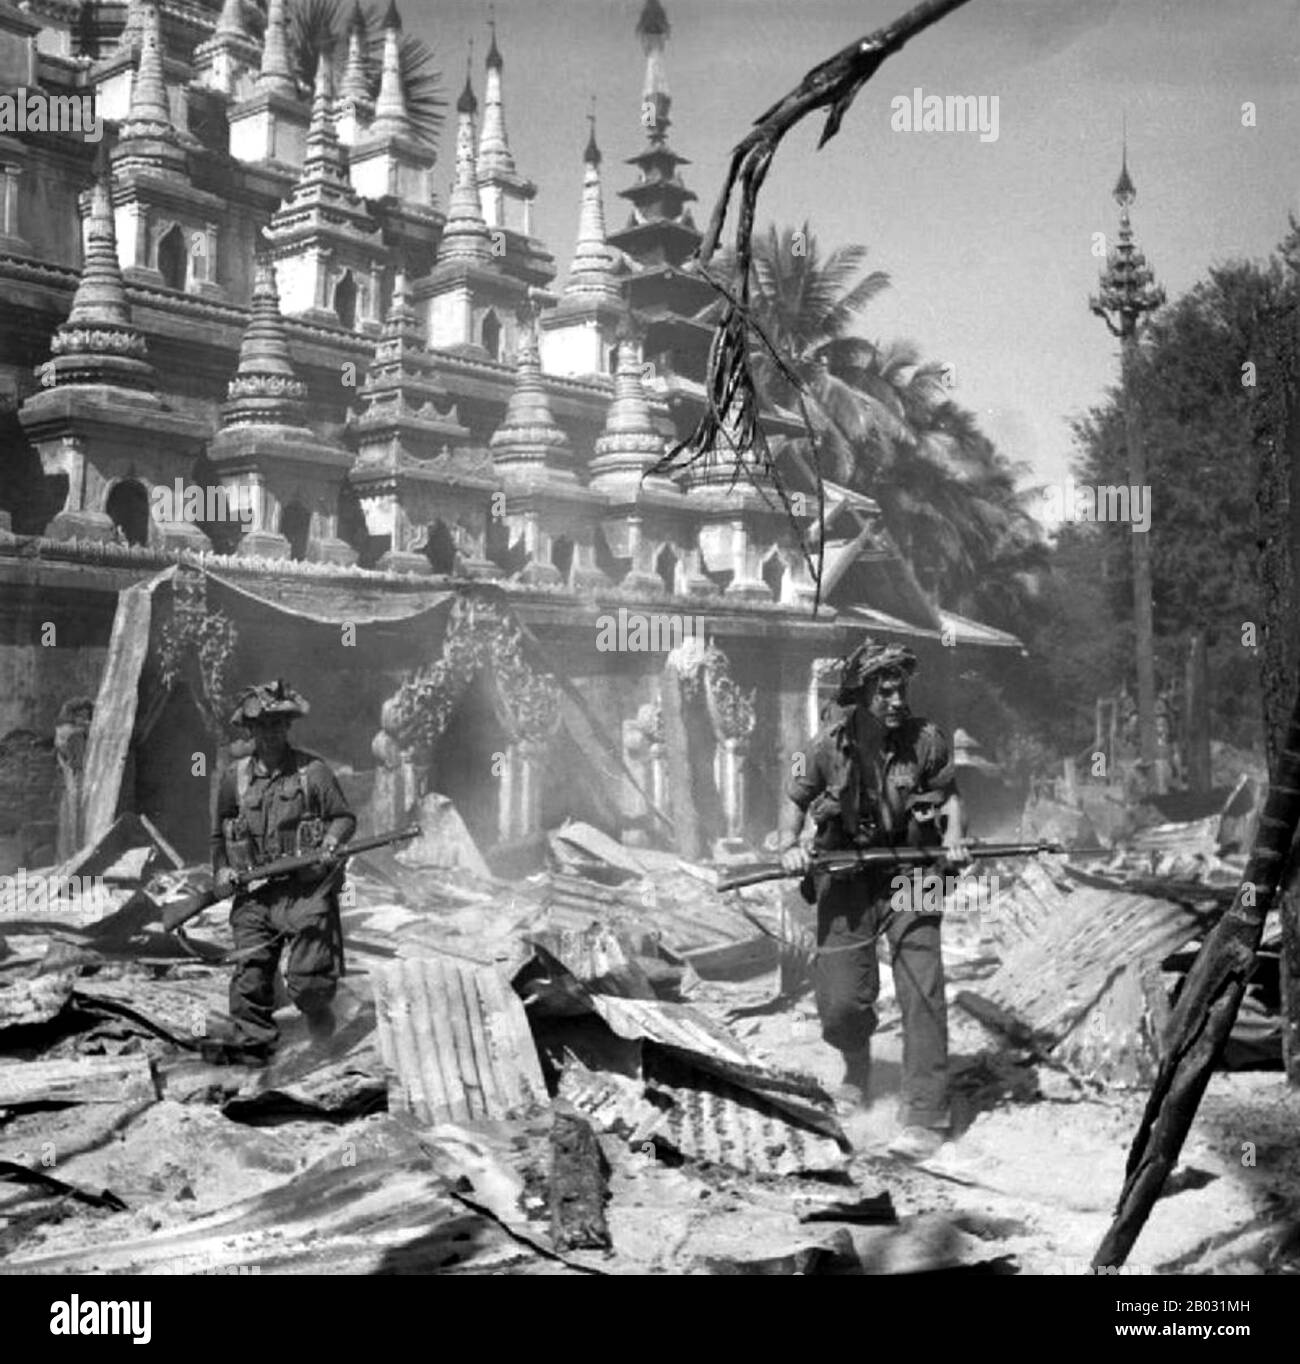 Un importante campo di battaglia, la Birmania è stata devastata durante la seconda guerra mondiale Nel marzo 1942, entro mesi da quando entrarono in guerra, le truppe giapponesi avevano avanzato Rangoon e l'amministrazione britannica era crollata. Un'amministrazione esecutiva birmana guidata da Ba Maw fu istituita dai giapponesi nell'agosto 1942. I Chindits britannici di Wingate sono stati formati in gruppi di penetrazione a lungo raggio addestrati per operare in profondità dietro le linee giapponesi. Una simile unità americana, i Marauders di Merrill, seguì i Chindits nella giungla birmana nel 1943. A partire dalla fine del 1944, le truppe alleate lanciarono una serie di offensive Foto Stock